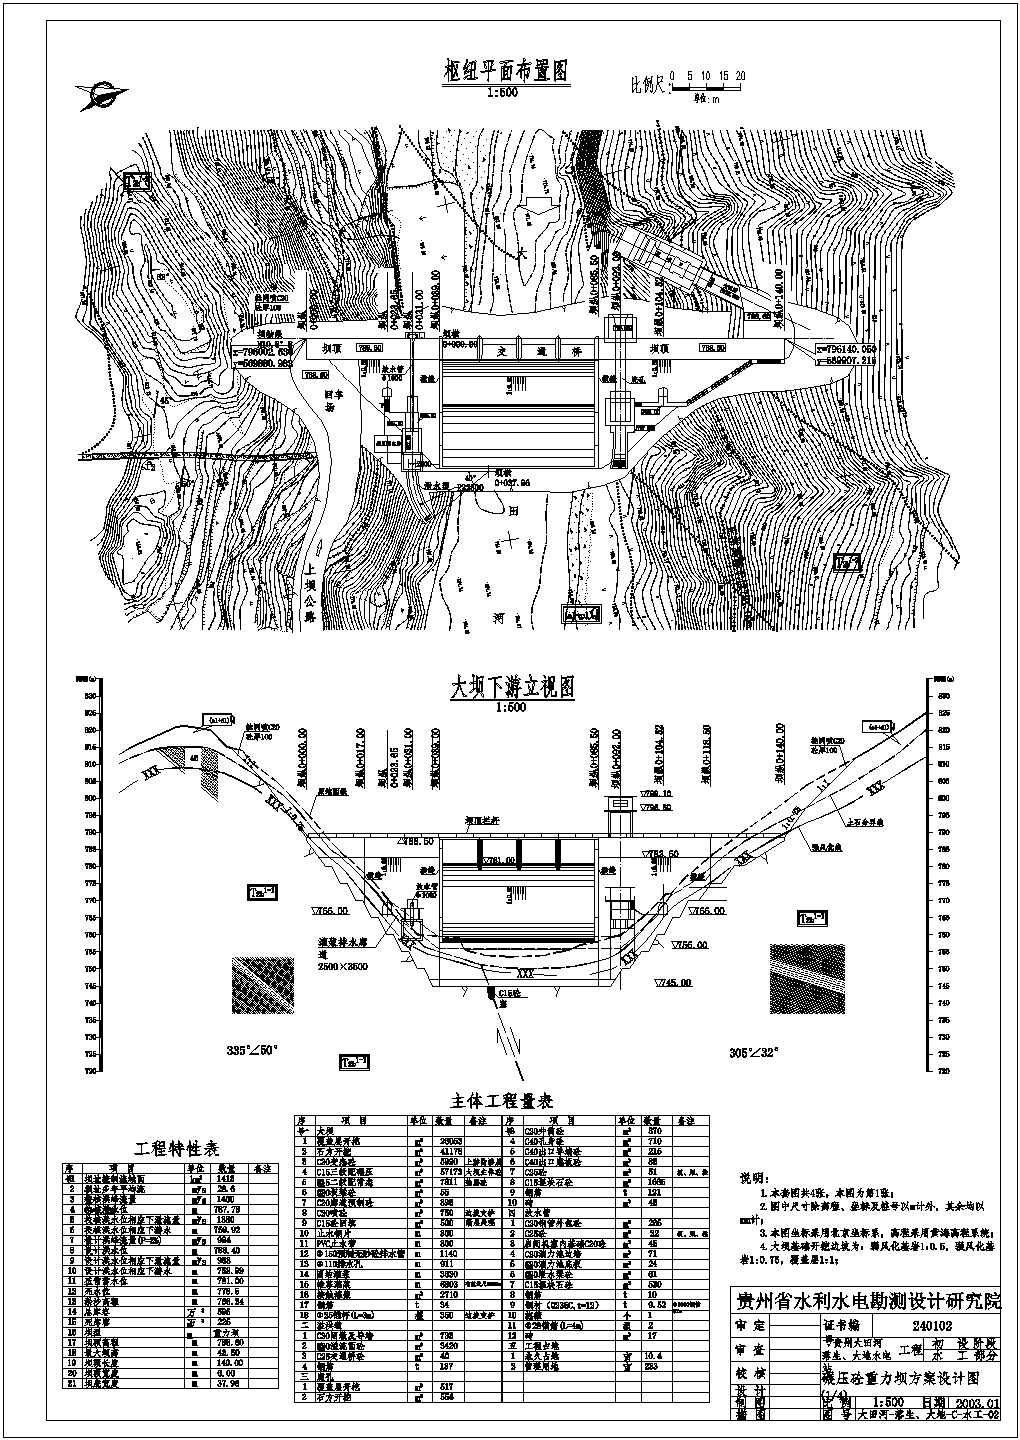 初设阶段贵州大田河落生、大地水电站碾压砼重力坝结构布置图